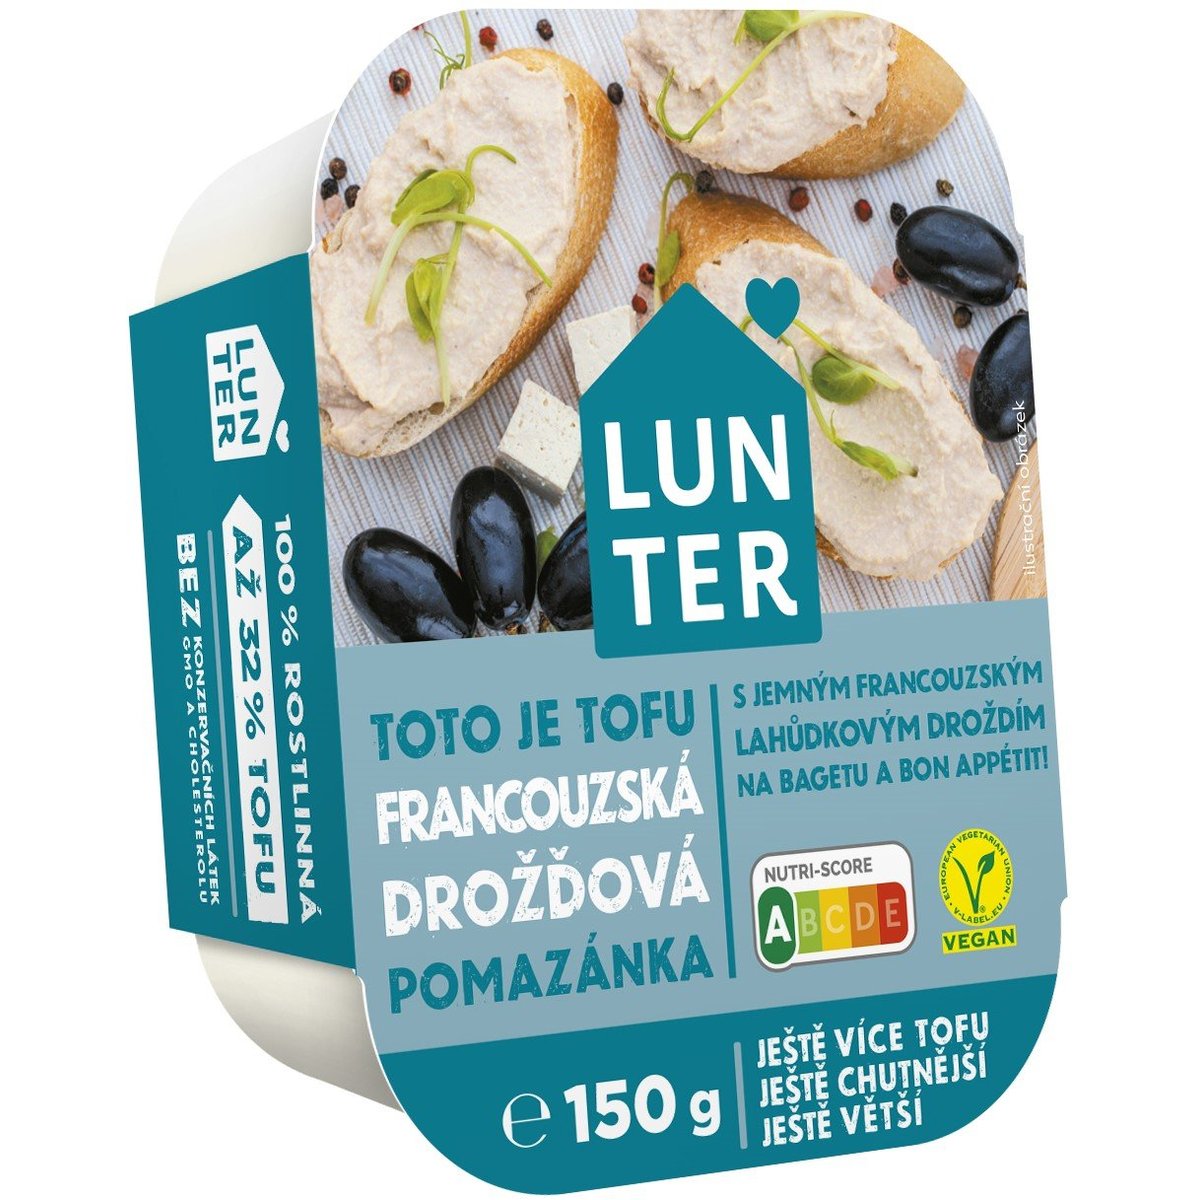 Lunter Francouzská drožďová rostlinná pomazánka Premium